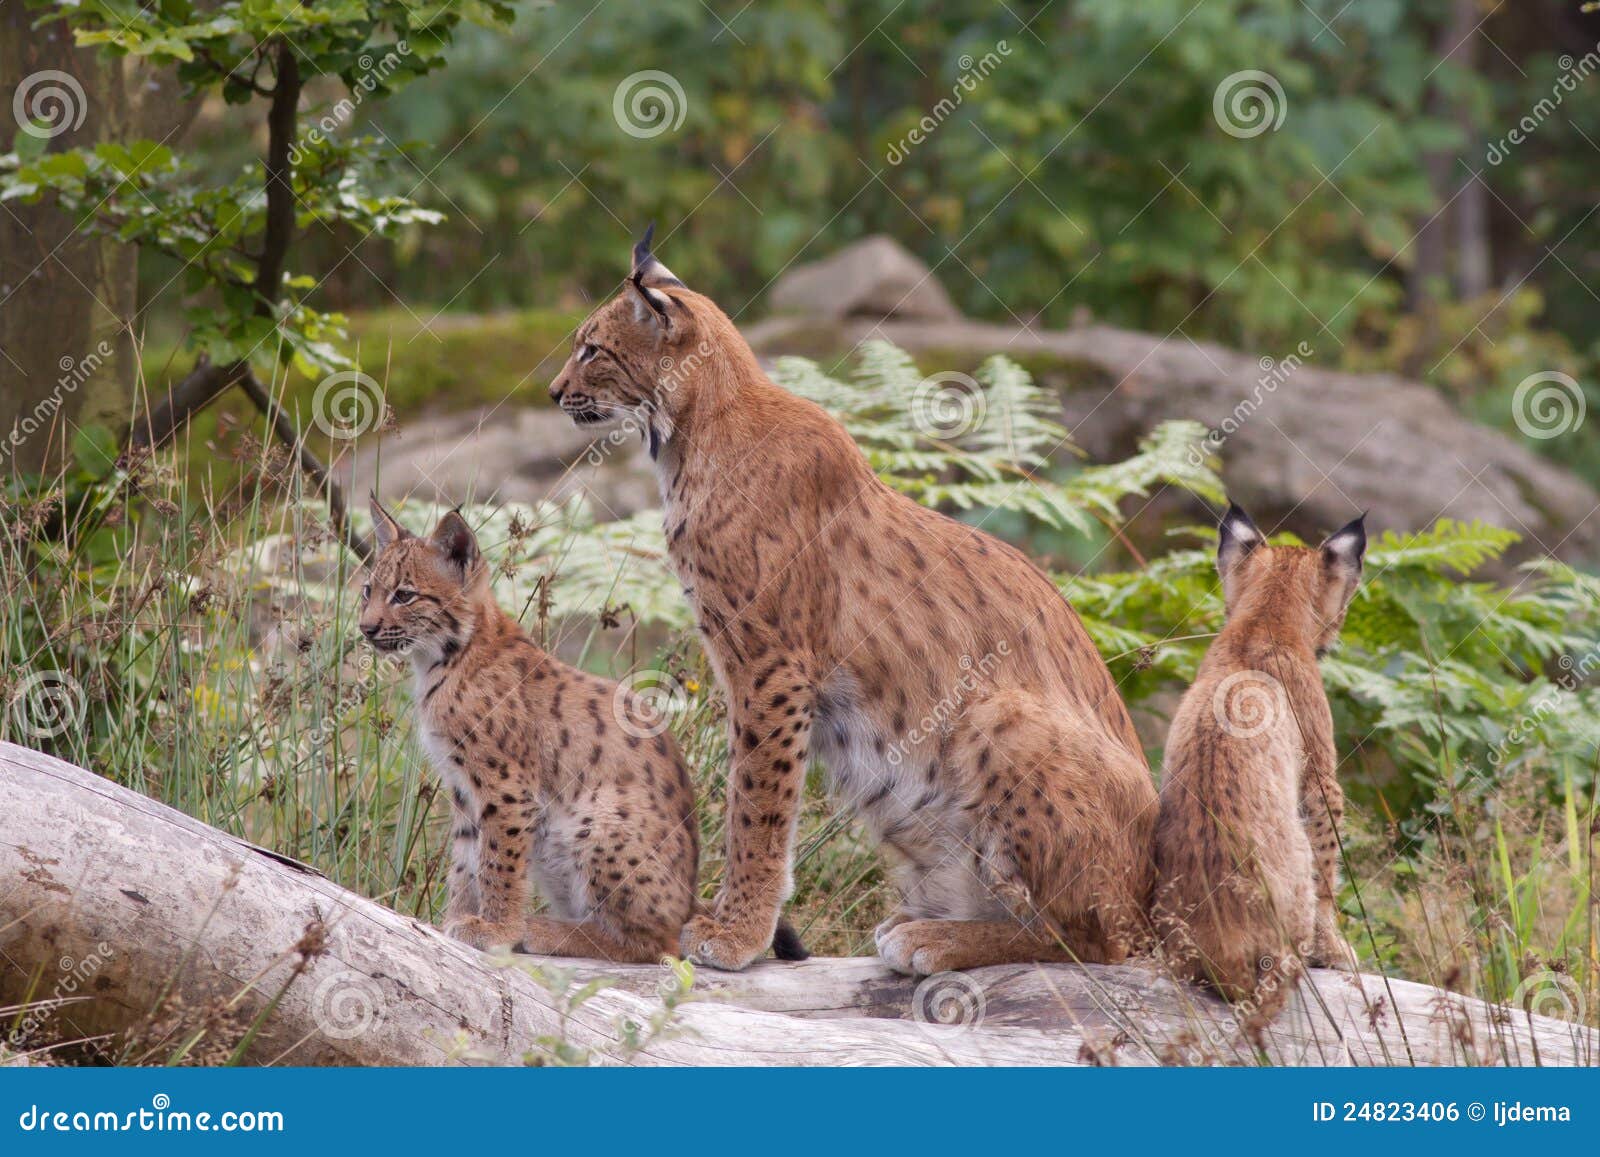 eurasian lynx (lynx lynx) with cubs